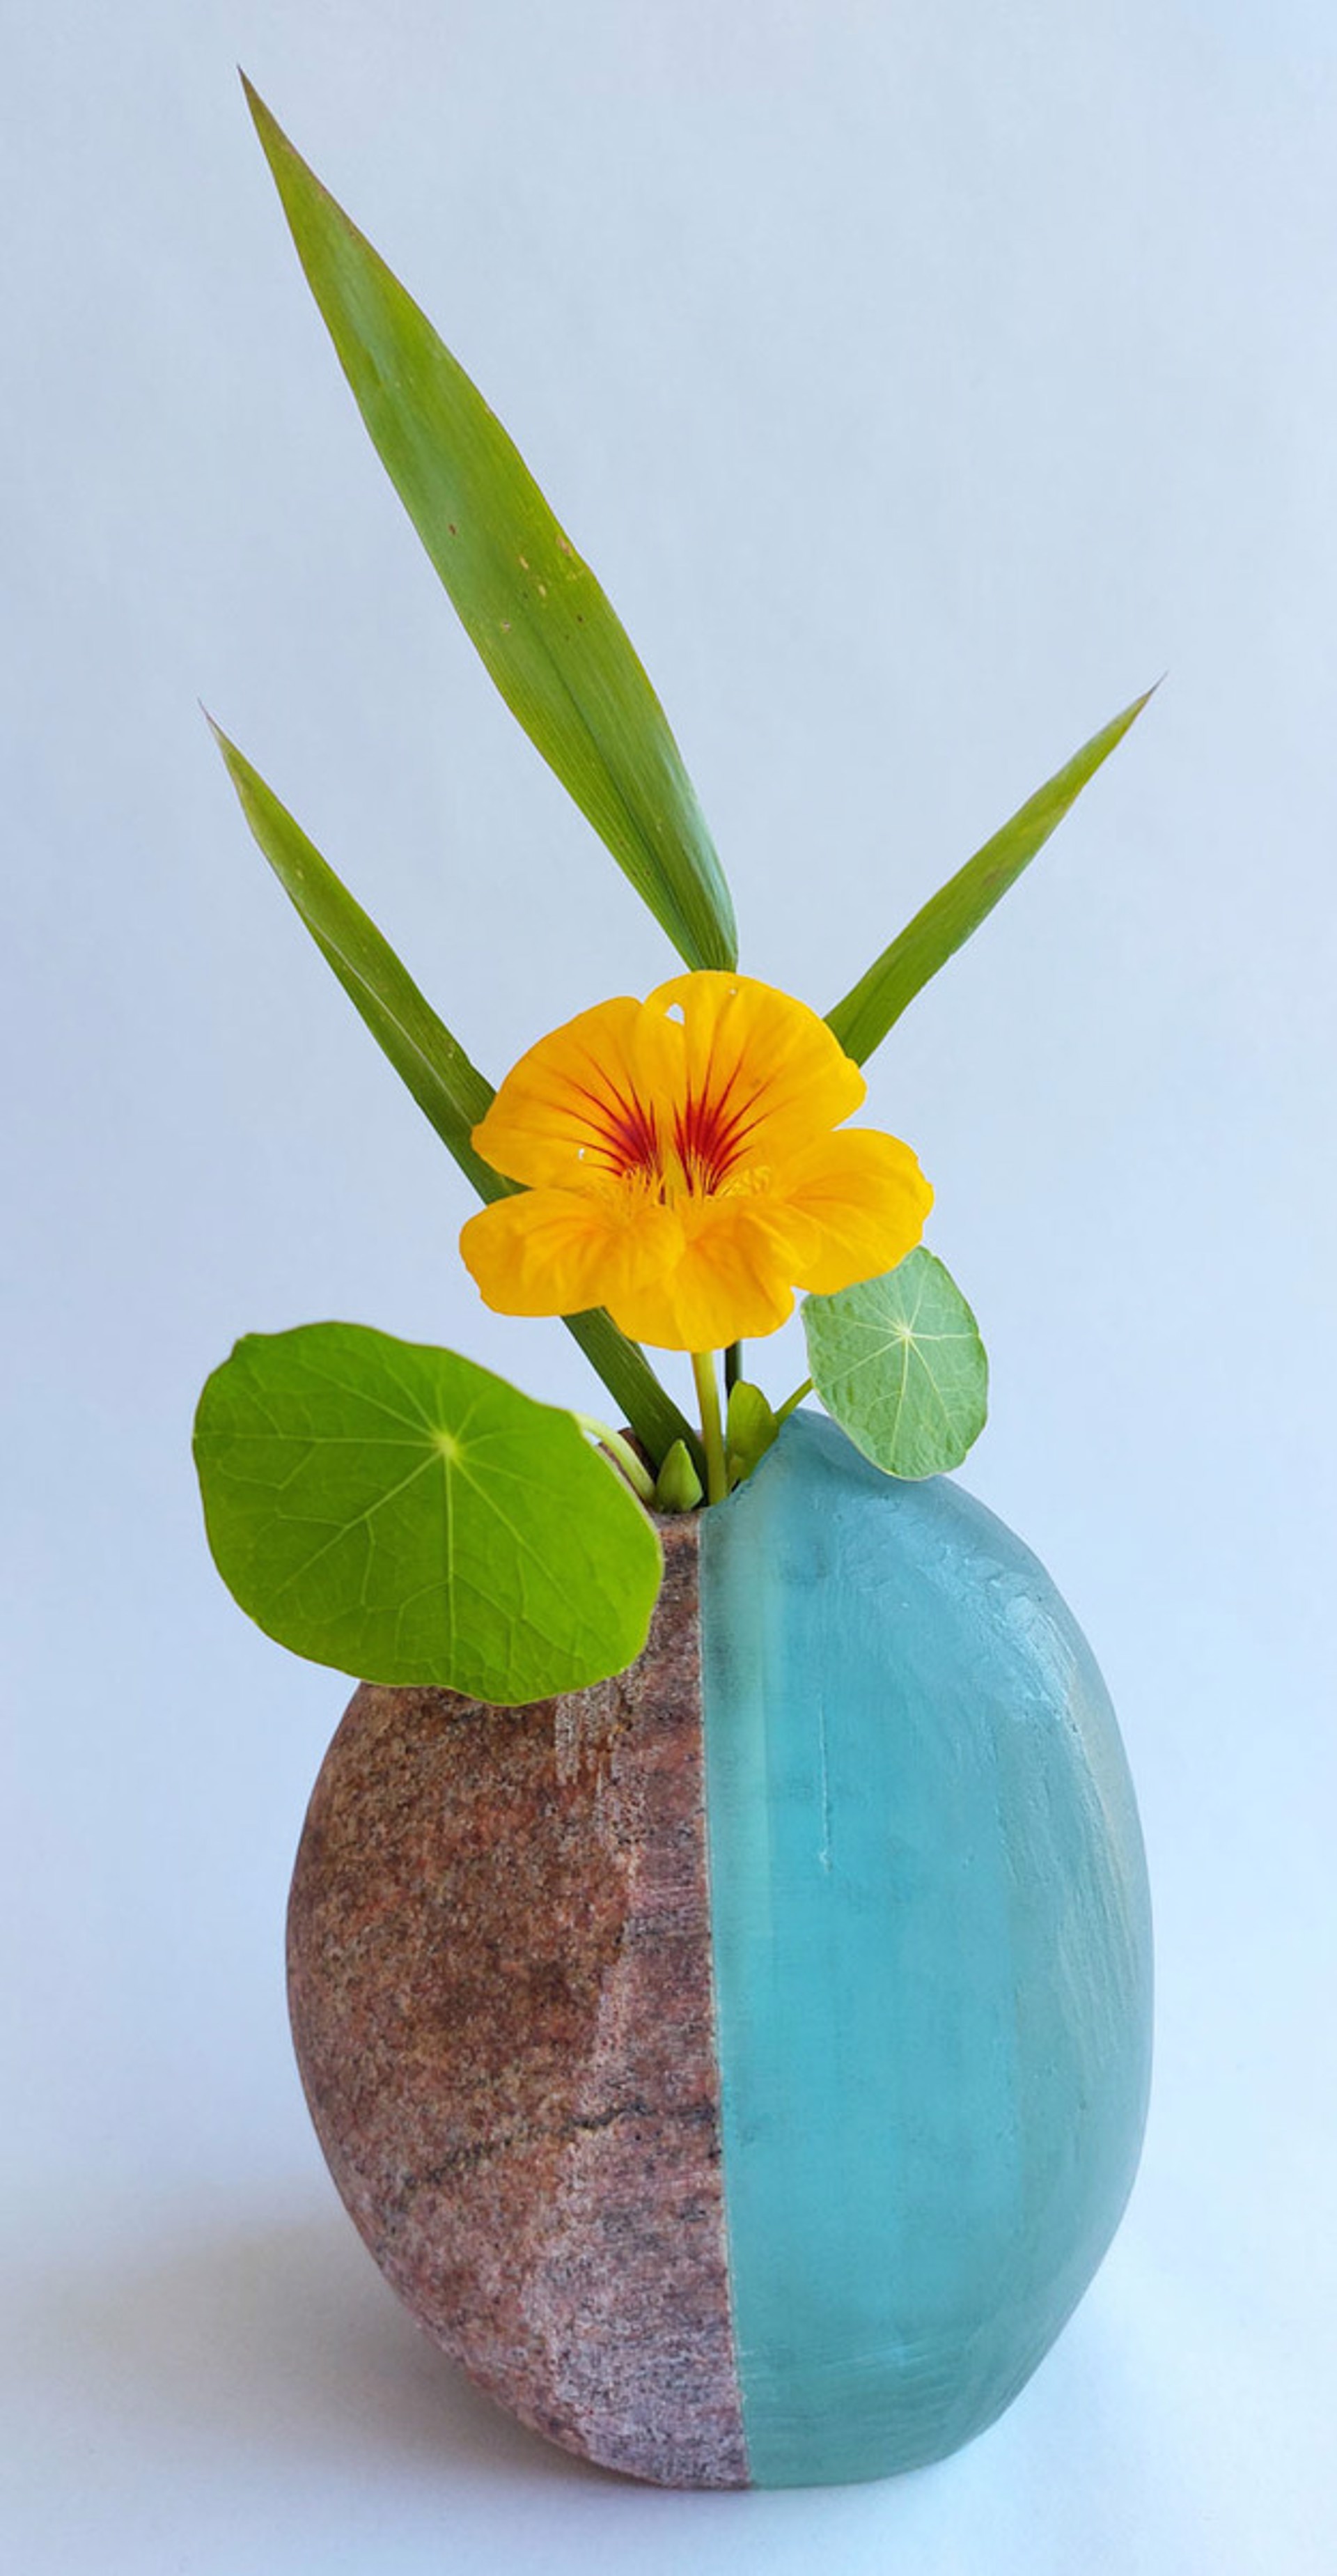 Medium Glass and Stone Vase #4 by Christy Haldane